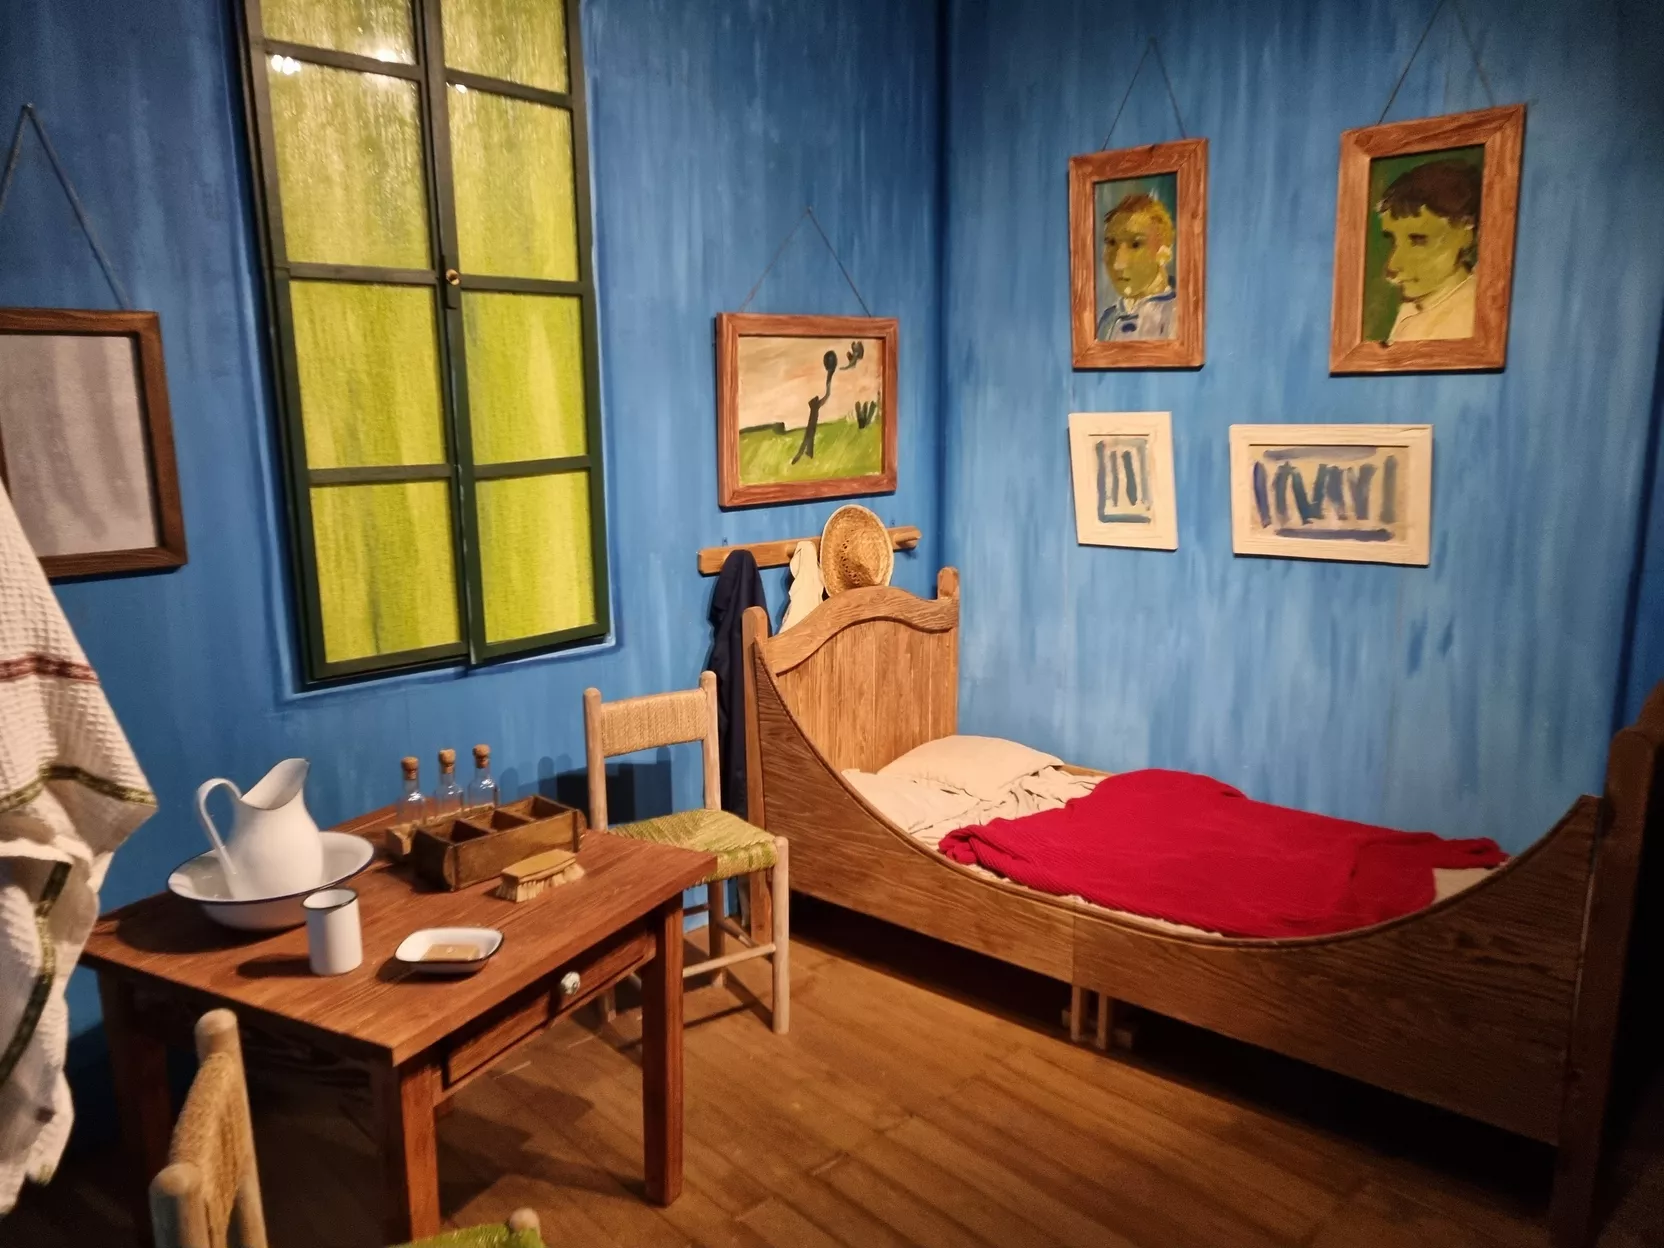 Van Gogh's bedroom recreated